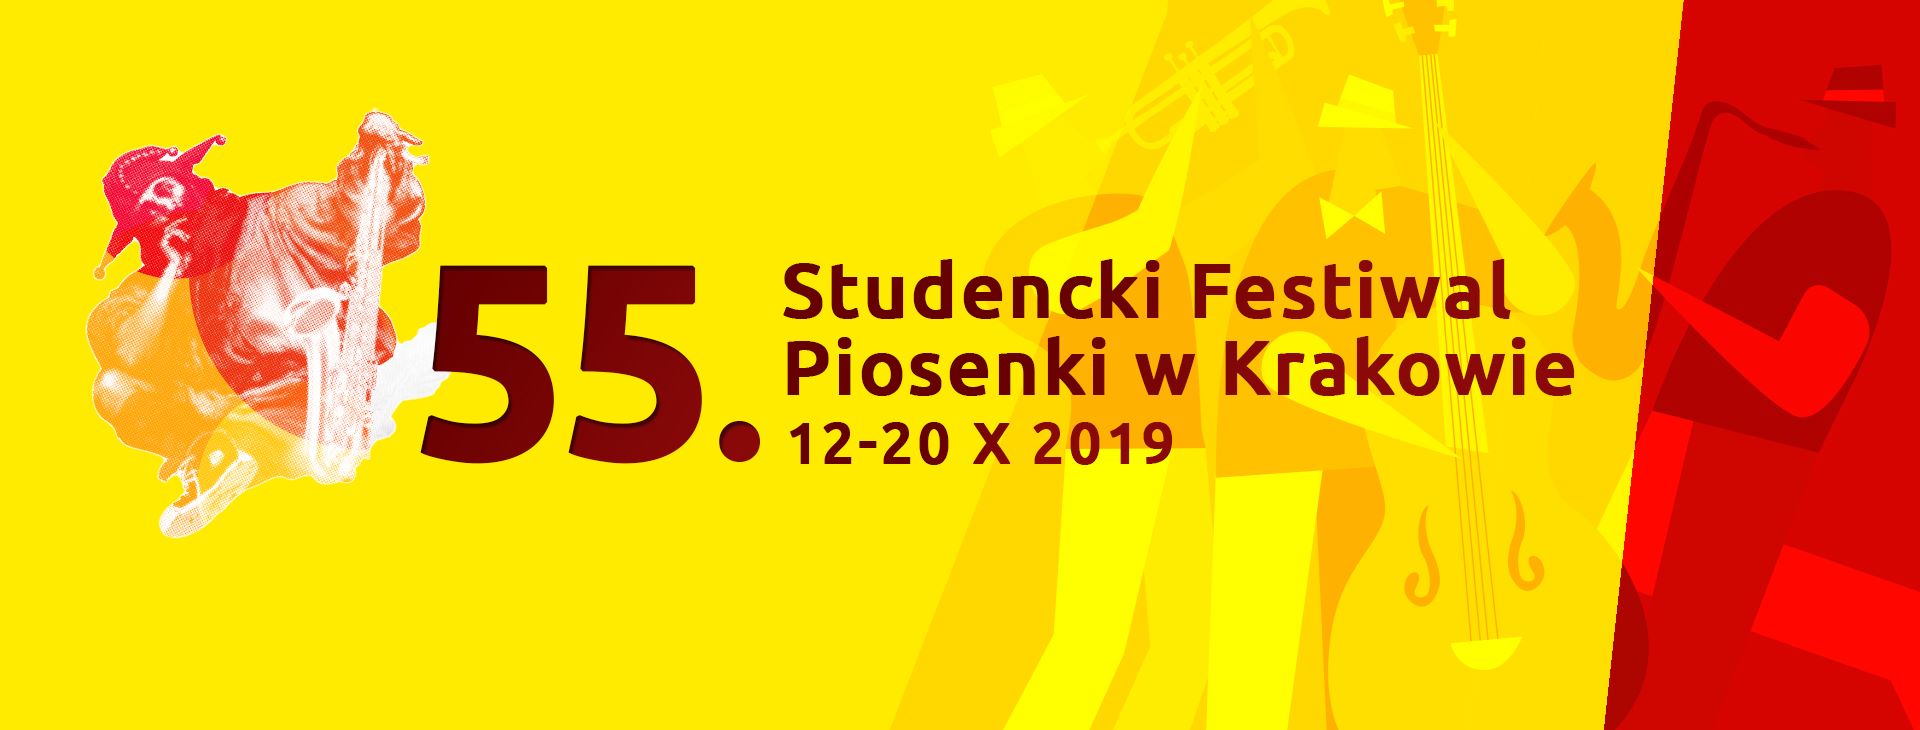 55. Studencki Festiwal Piosenki w Krakowie